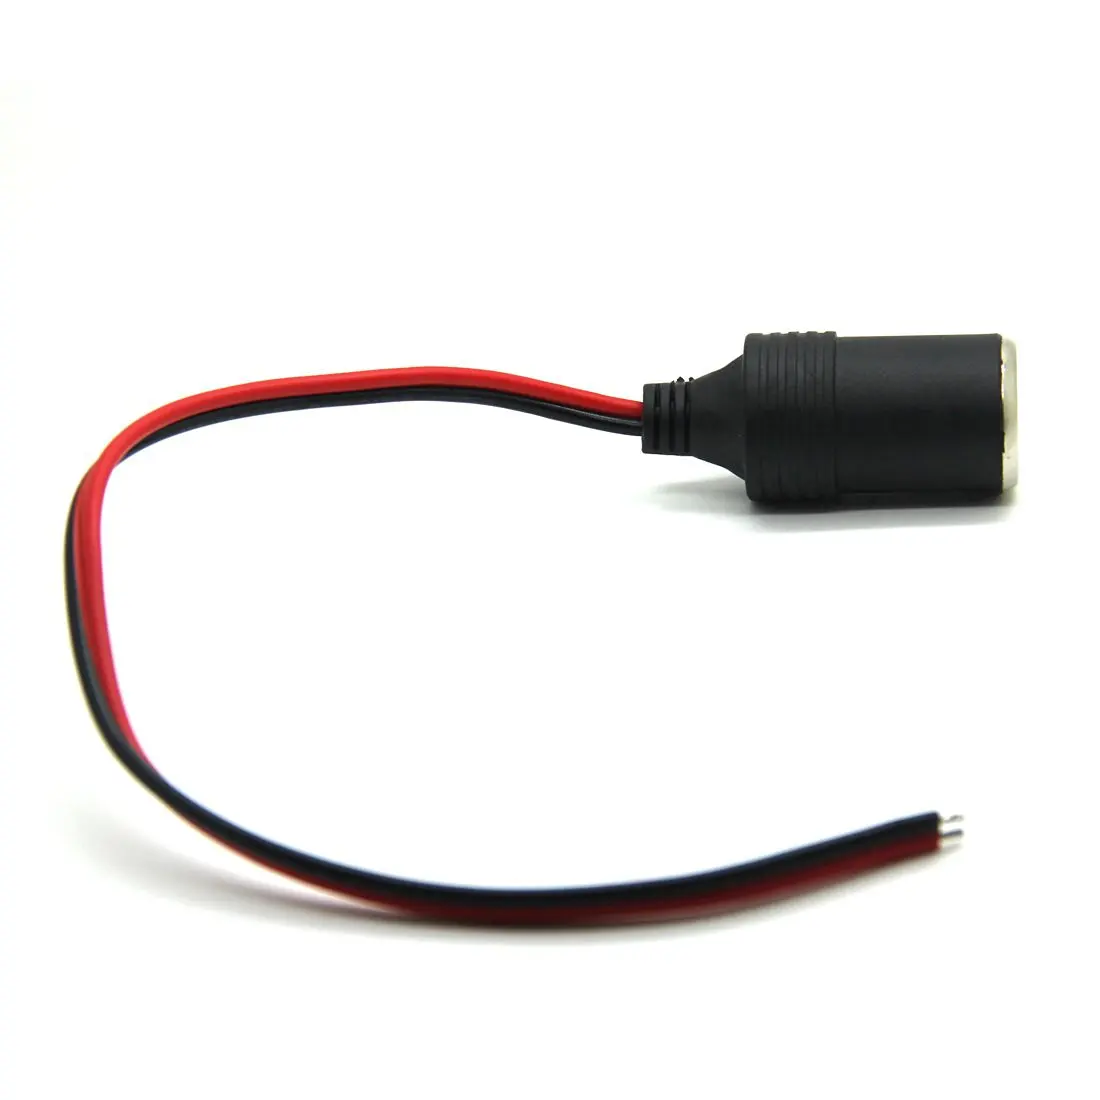 Высокое качество 12 В/24 В черный автомобильный прикуриватель розетка зарядное устройство кабель разъем кабель гнездо адаптер Горячая